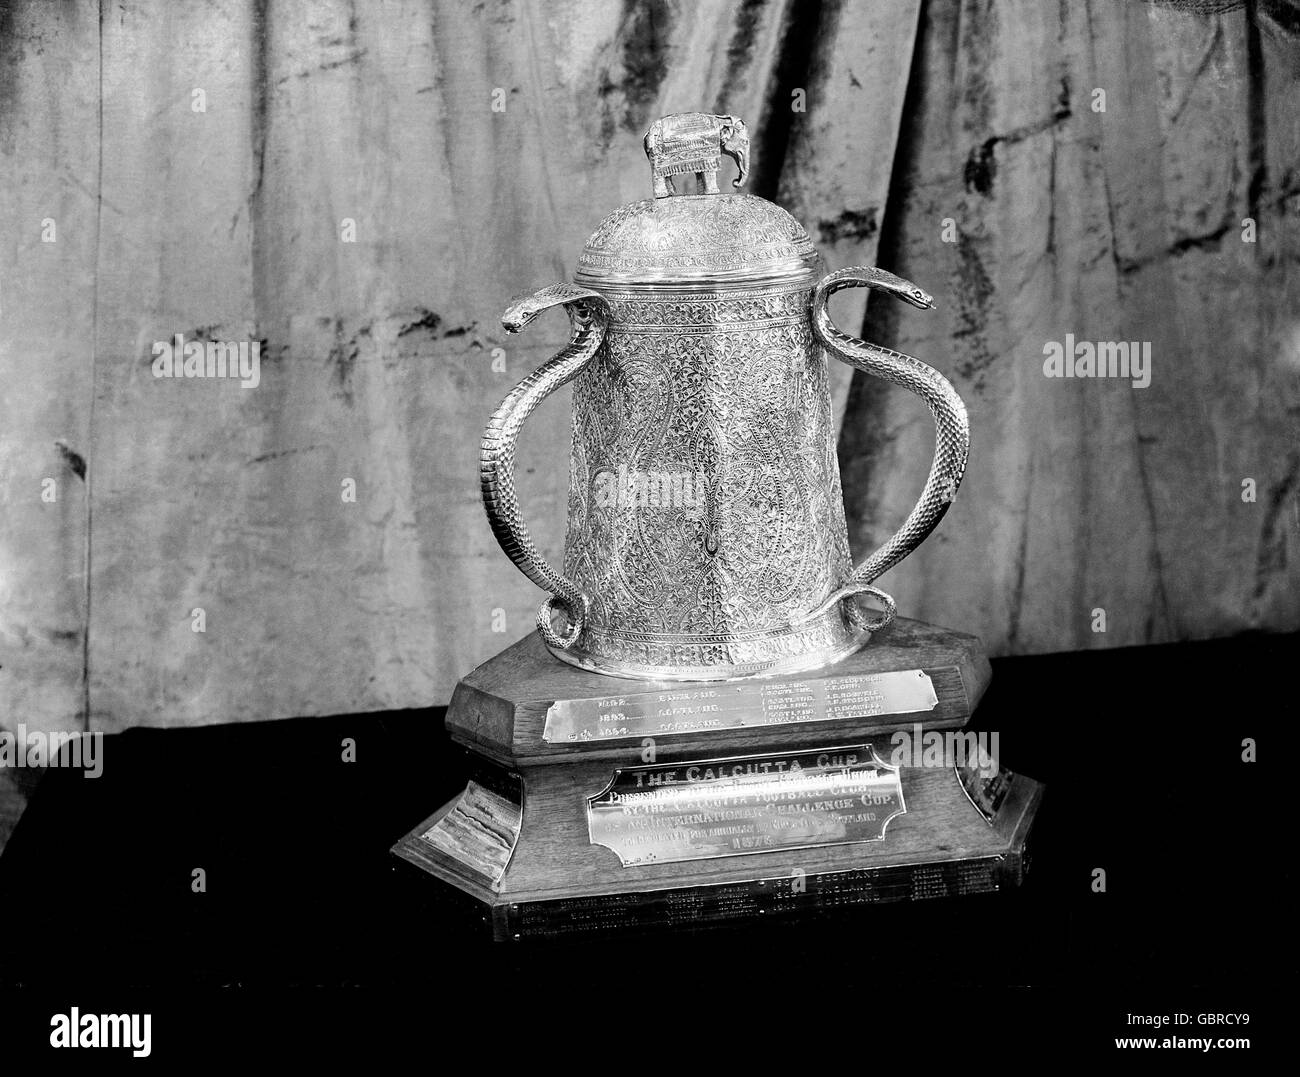 La Calcutta Cup.Le plus ancien trophée de l'histoire du rugby international, originaire de l'Inde en 1878 au Calcutta Rugby and Cricket Club dans la ville aujourd'hui connue sous le nom de Kolkata.Le trophée a été fait à partir de 13 roupies indiennes d'argent qui ont été fondues après la disparition du club.Il a ensuite été offert à la RFU comme un prix au gagnant des matchs Angleterre / Scotlands.Le premier match de la coupe Calcutta a eu lieu en 1879. Banque D'Images